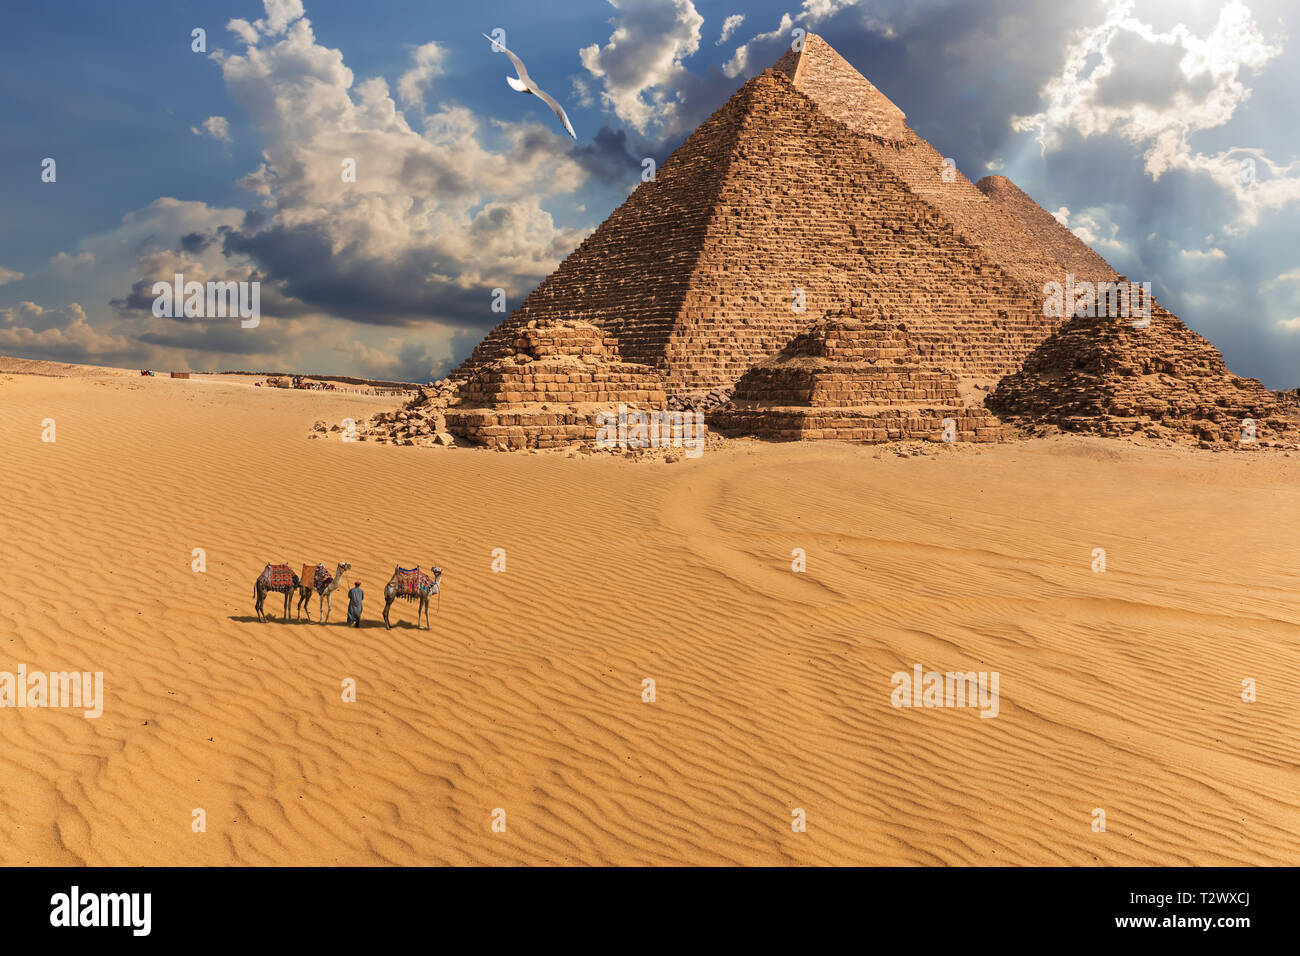 Las pirámides de Giza y camellos en el desierto bajo las nubes, Egipto. Foto de stock